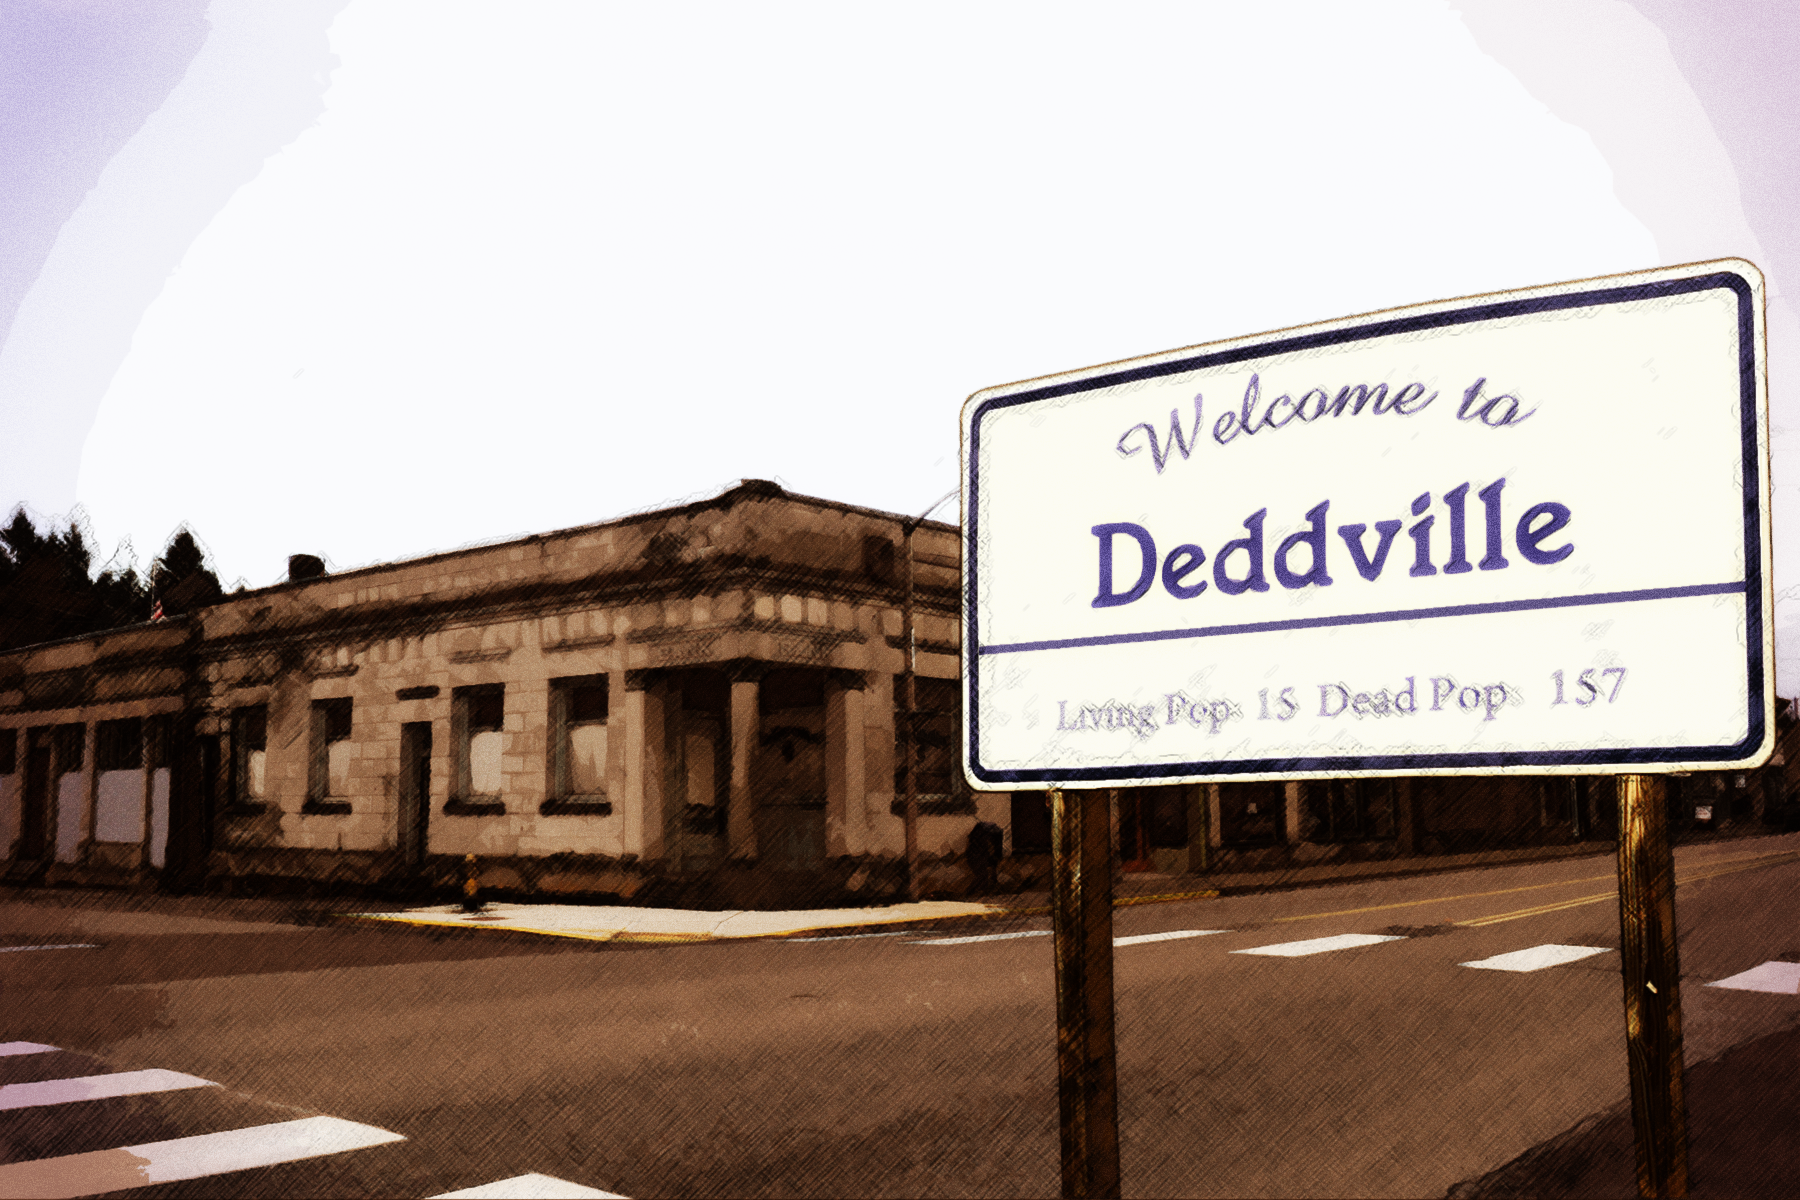 Art for "Deddville"